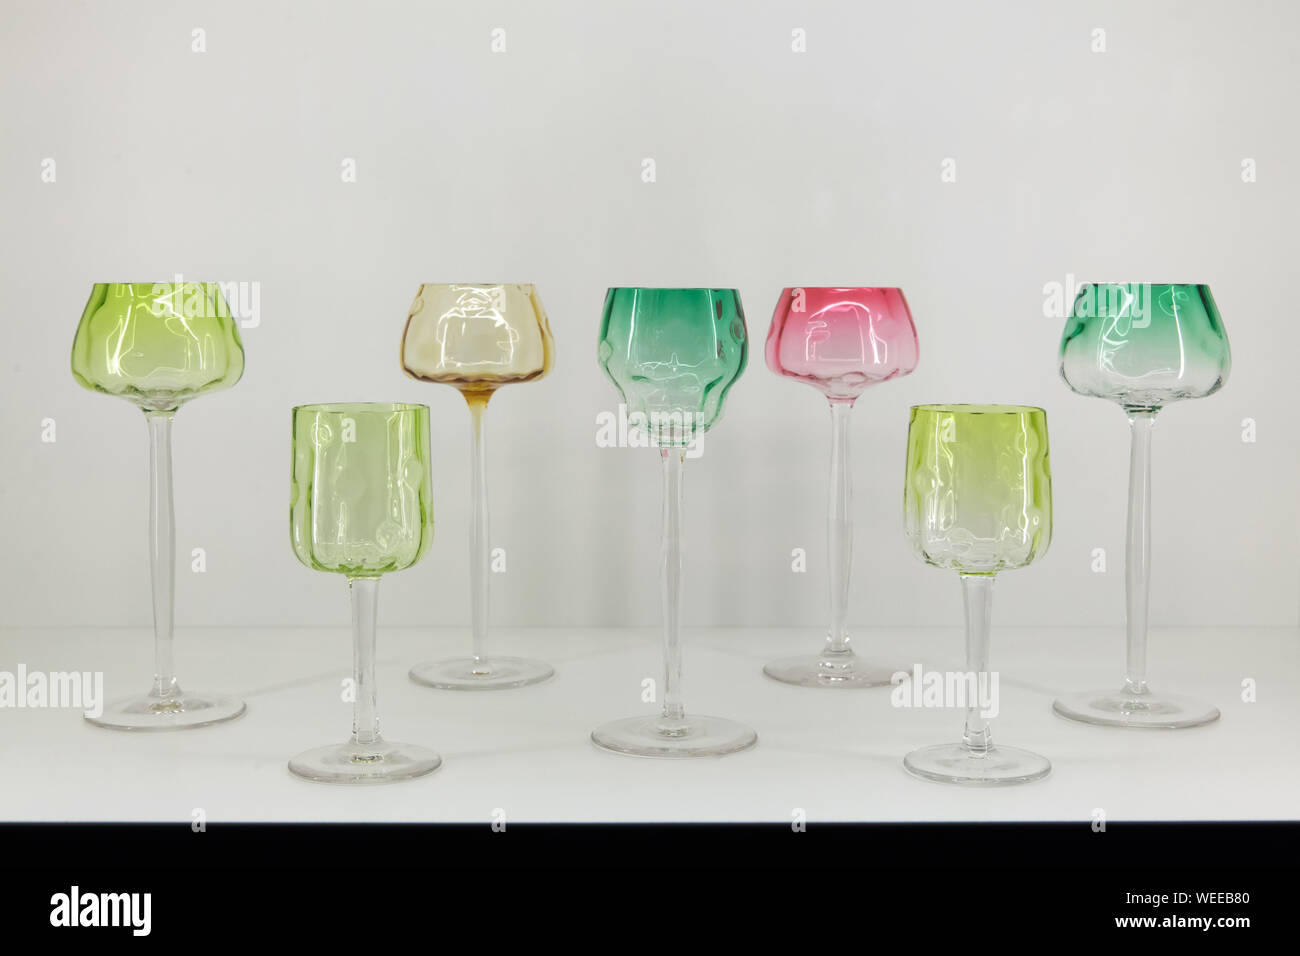 Stem Glasses From The Dinner Set Meteor No 100 Designed By Austrian Modernist Artist Koloman